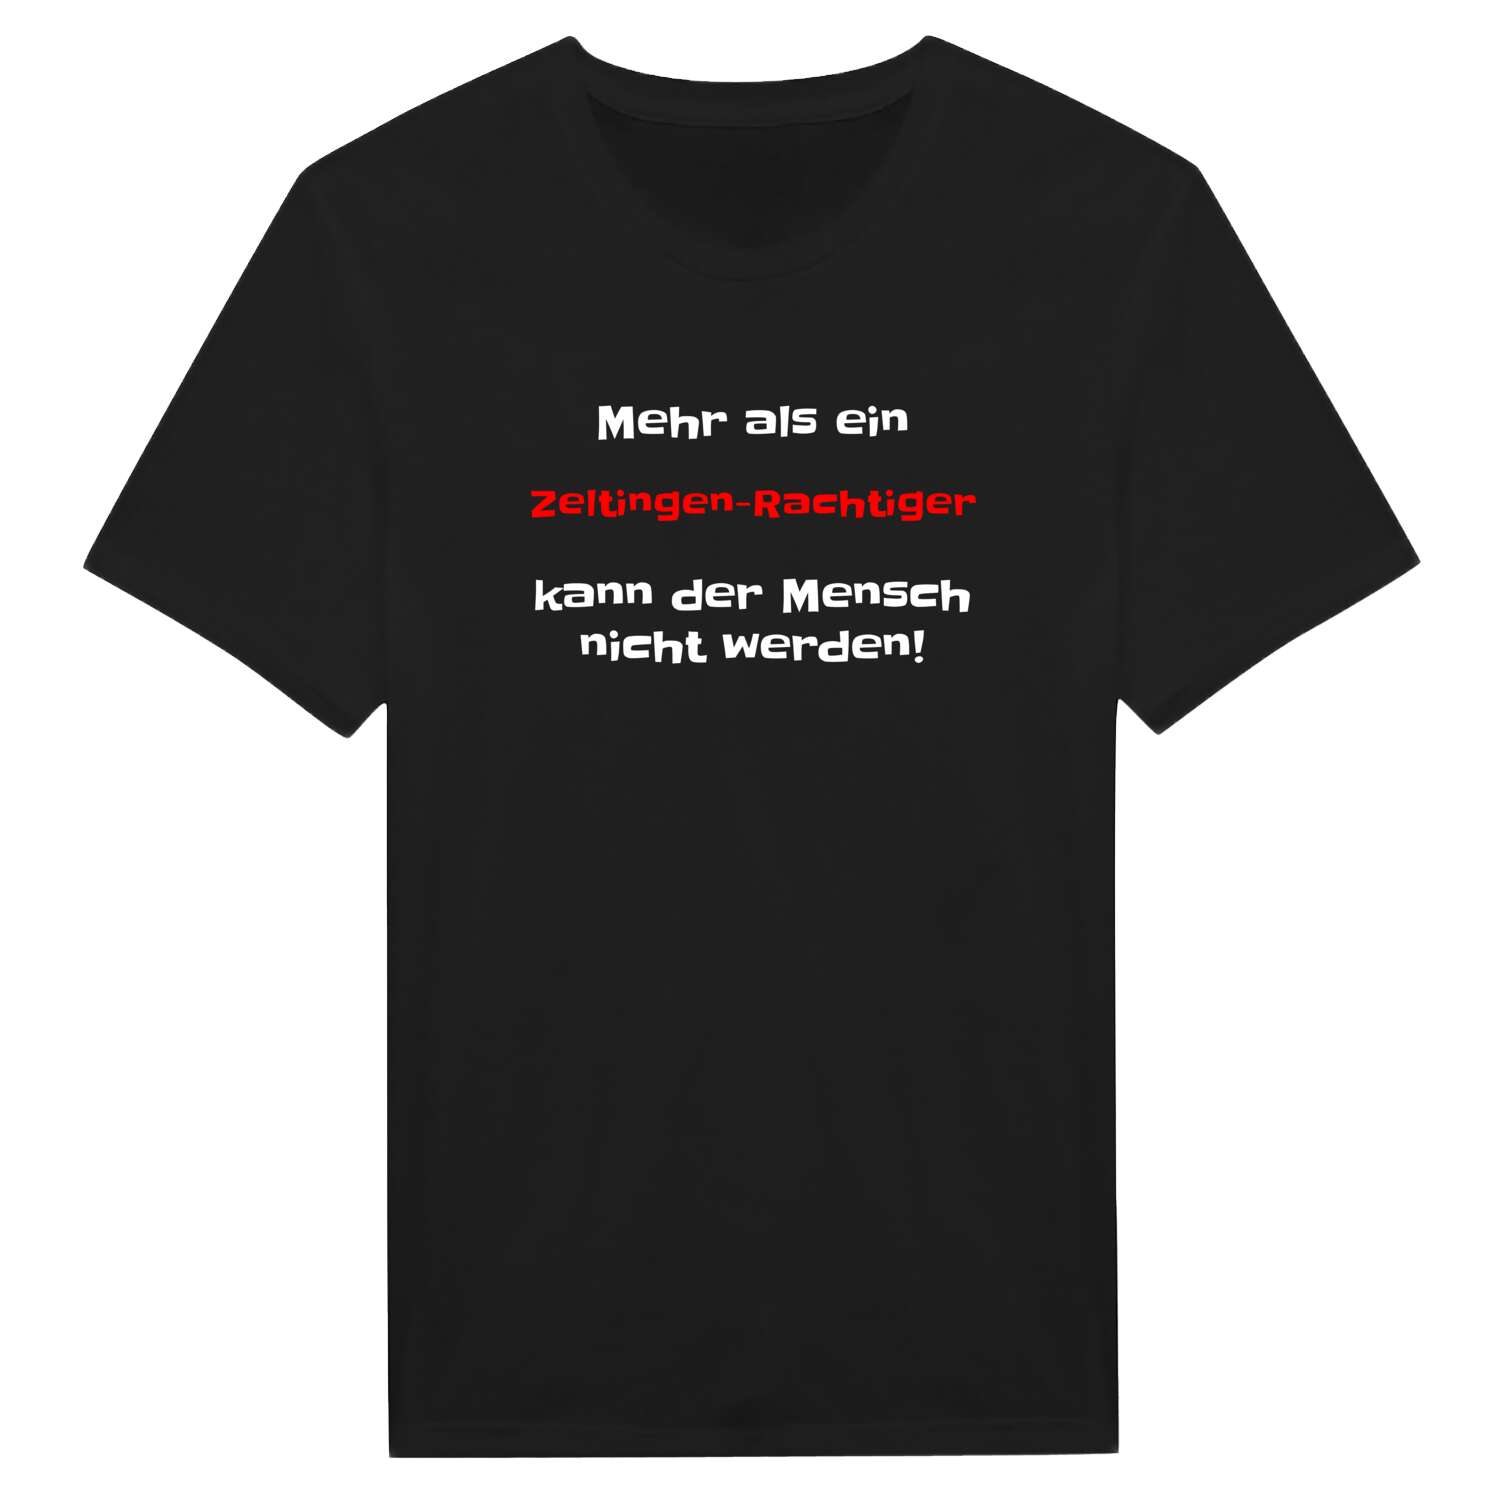 Zeltingen-Rachtig T-Shirt »Mehr als ein«